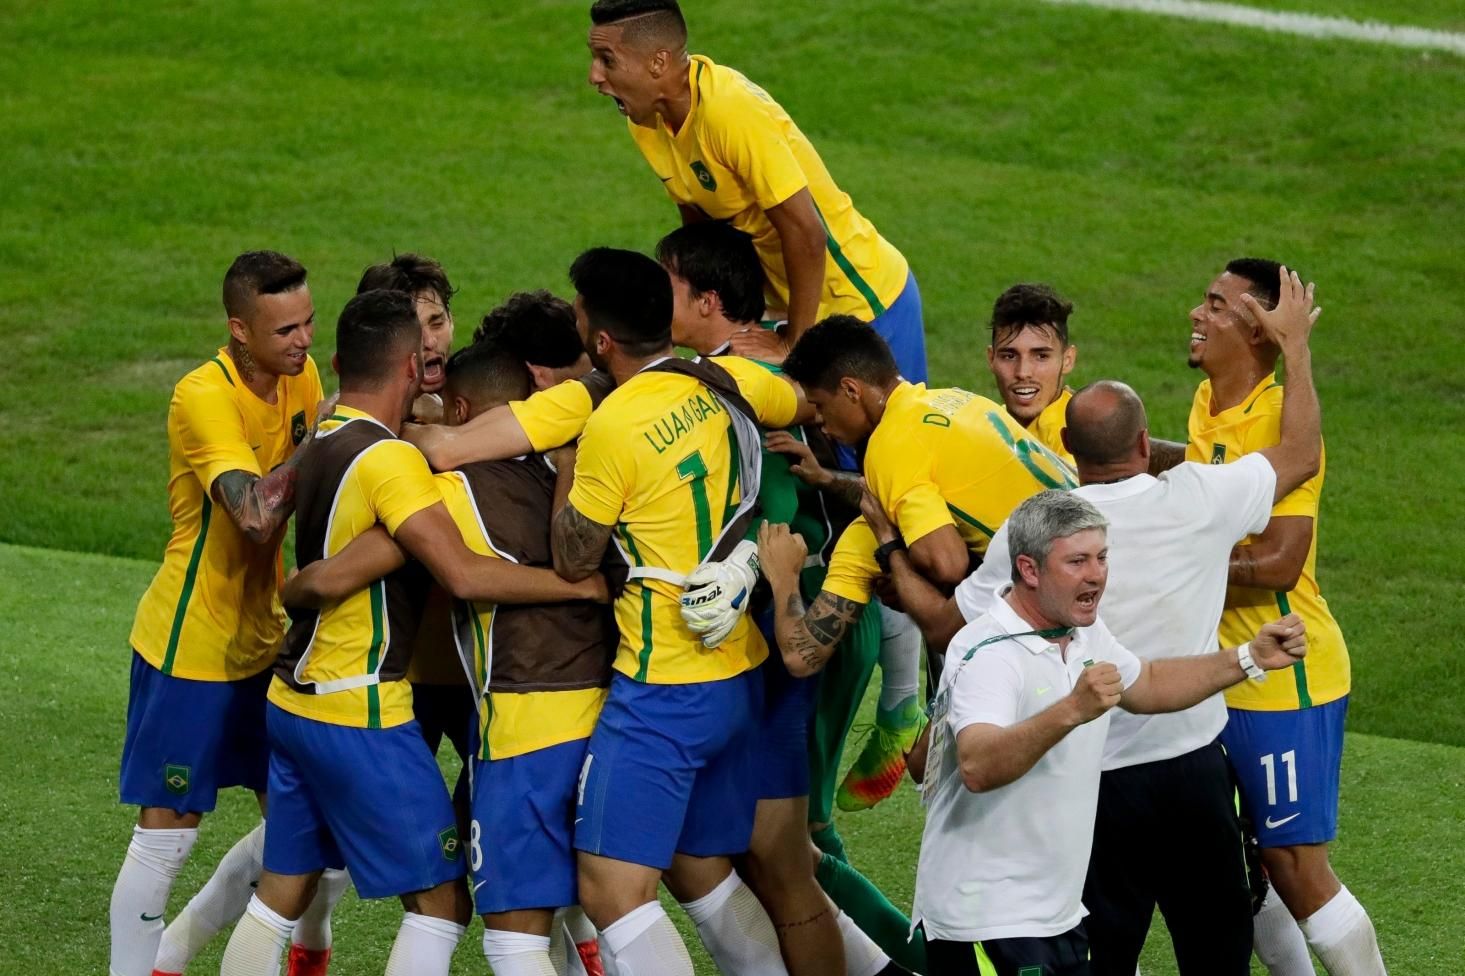 Brasil conquista inédita vaga na Copa do Mundo de futebol americano